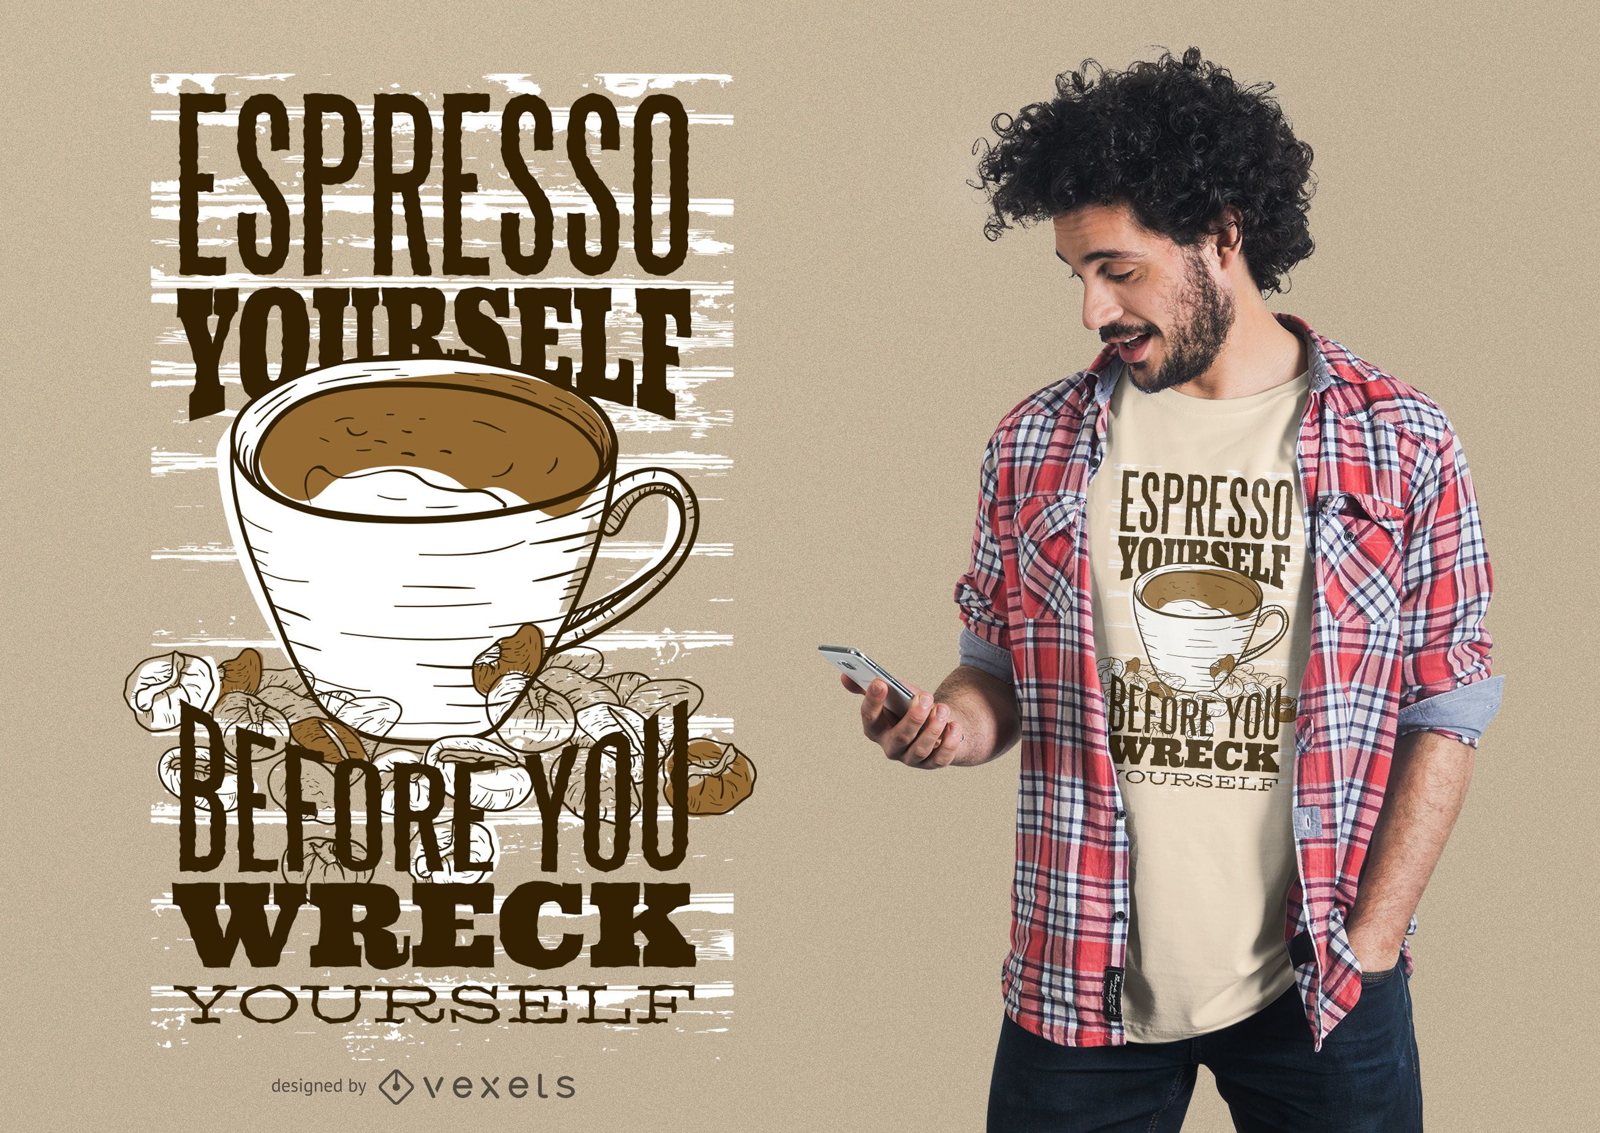 Espresso yourself t-shirt design